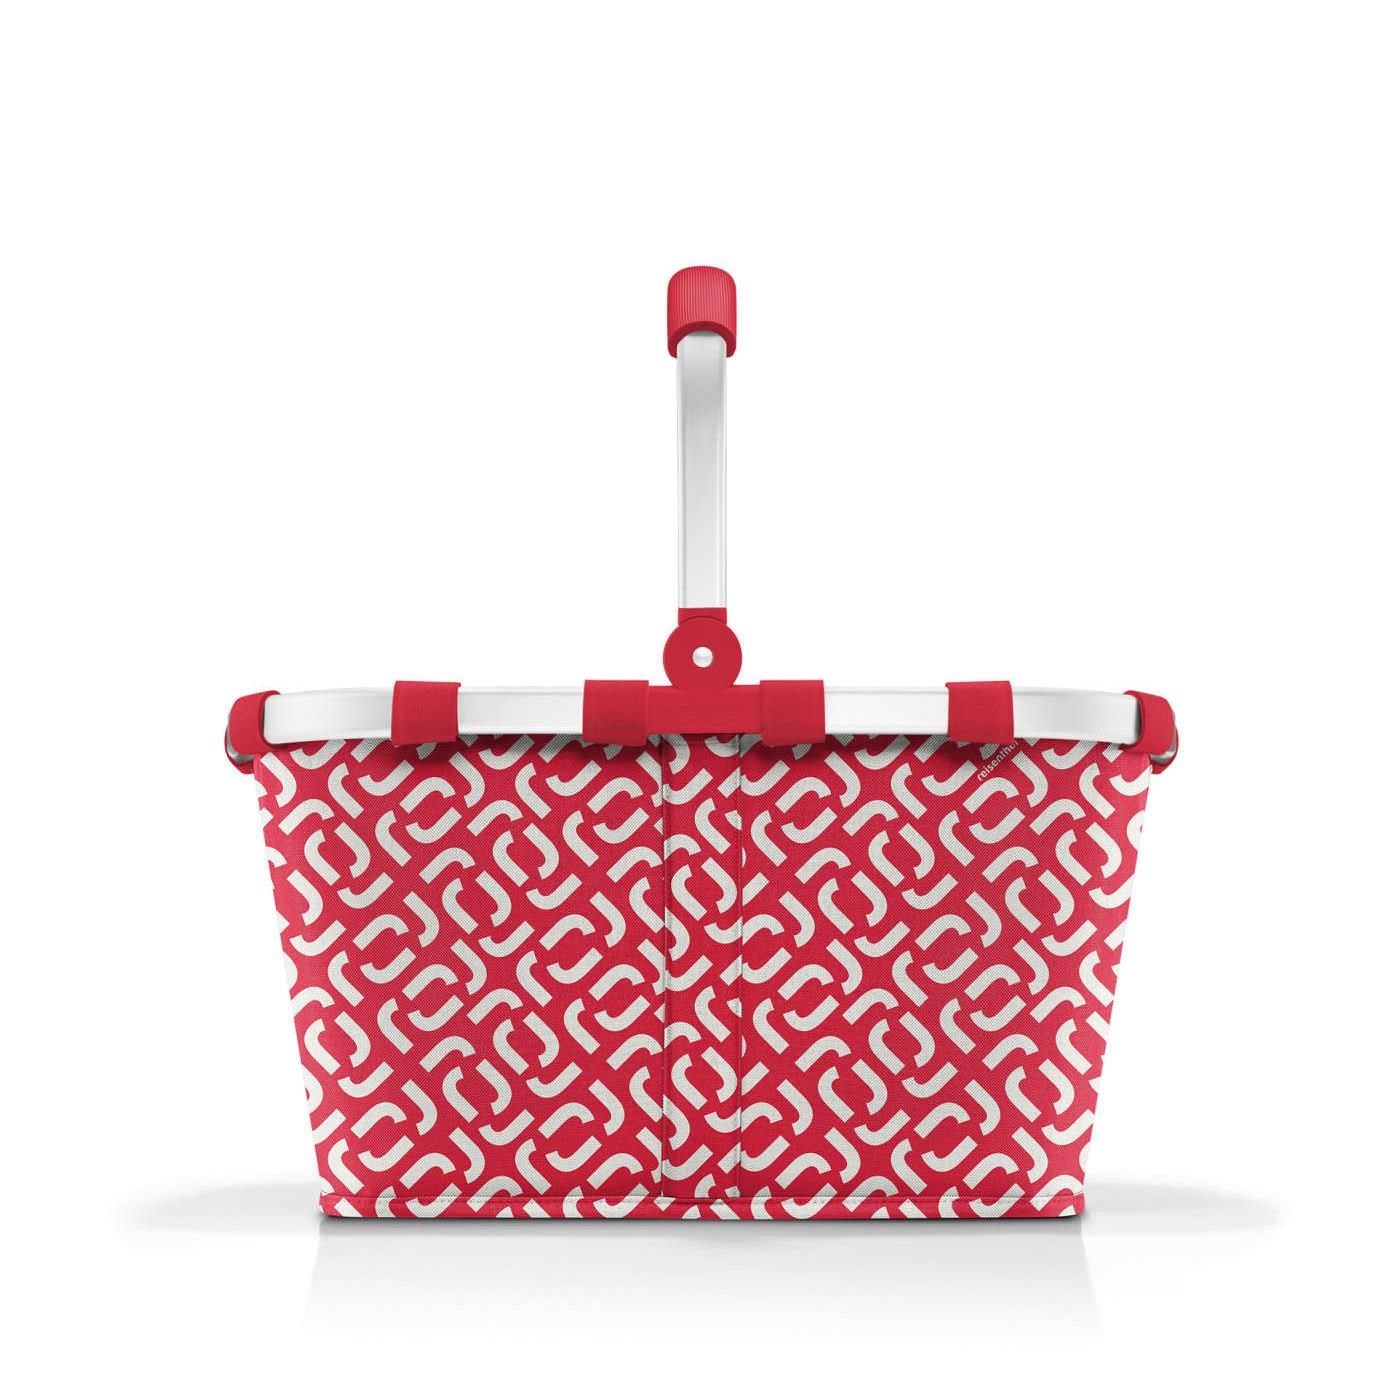 Nákupní košík Carrybag signature red_3